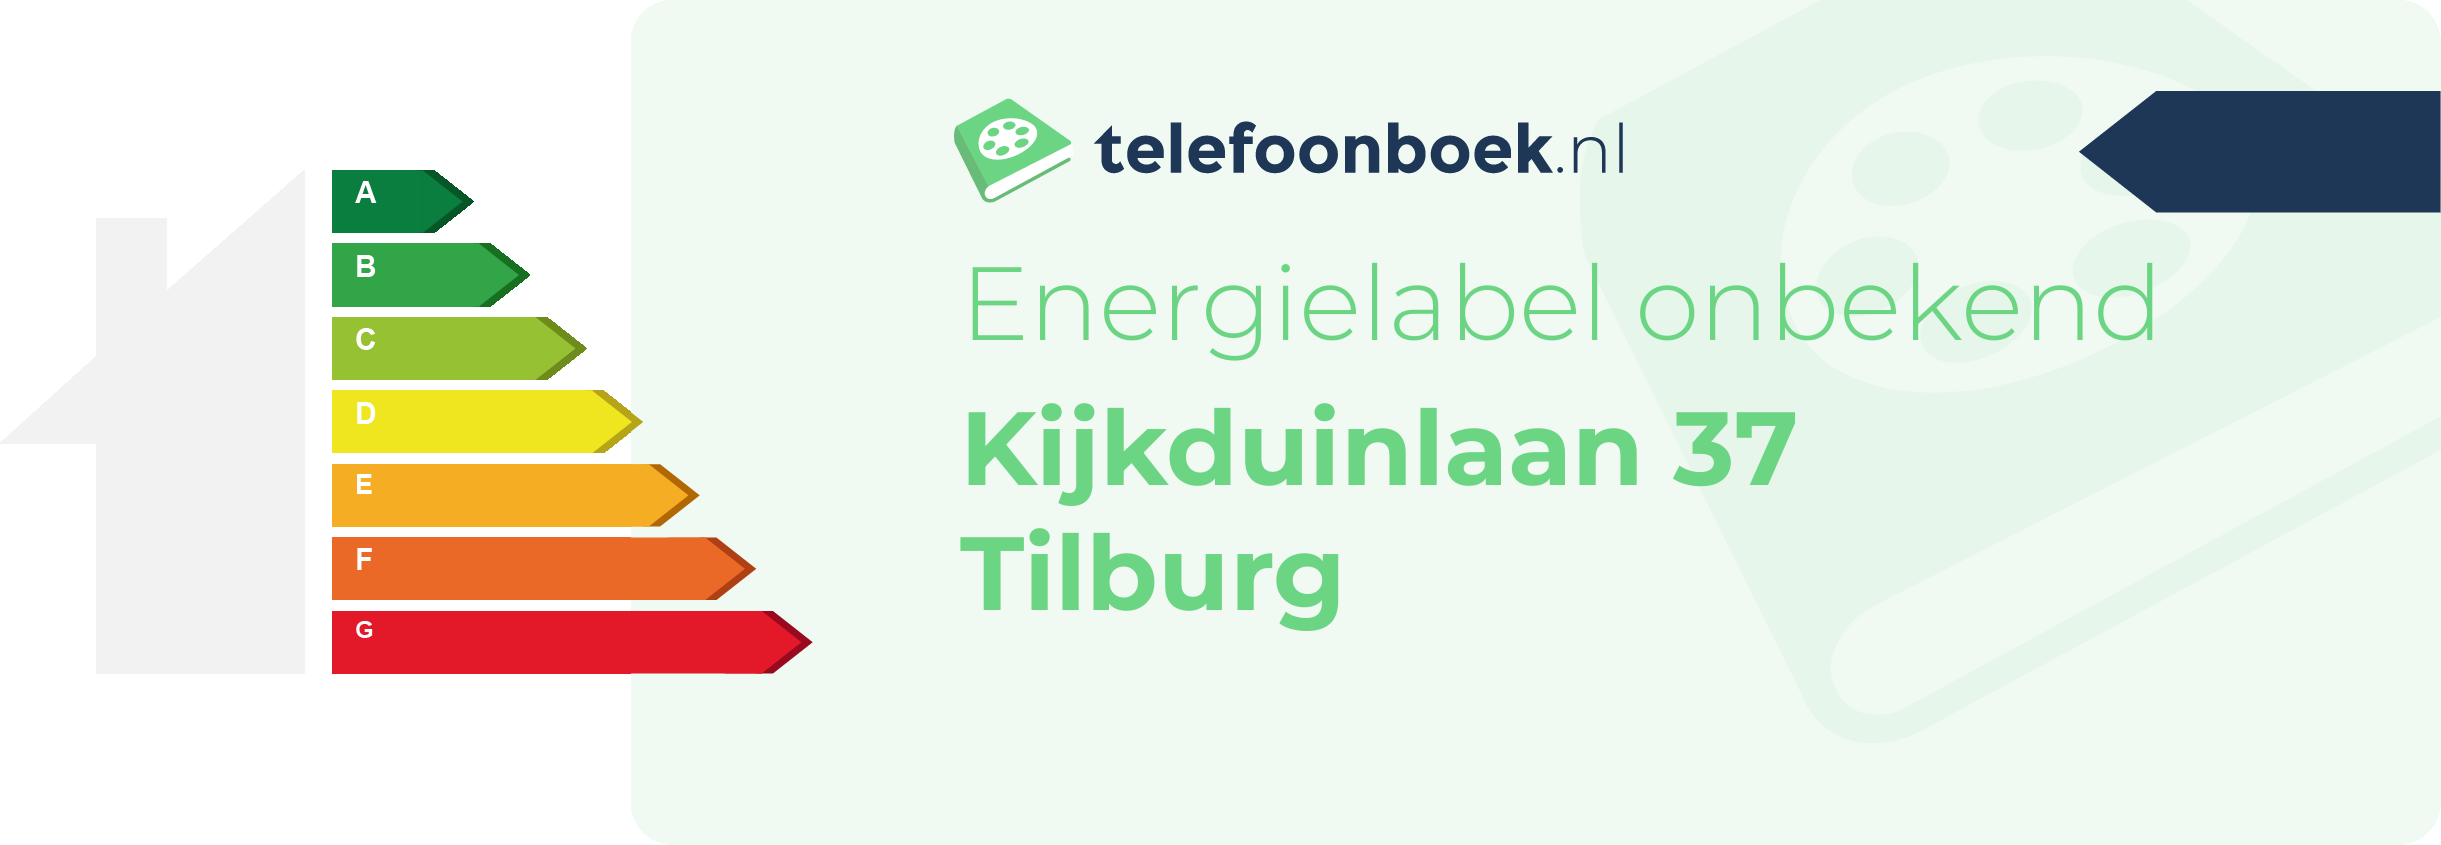 Energielabel Kijkduinlaan 37 Tilburg